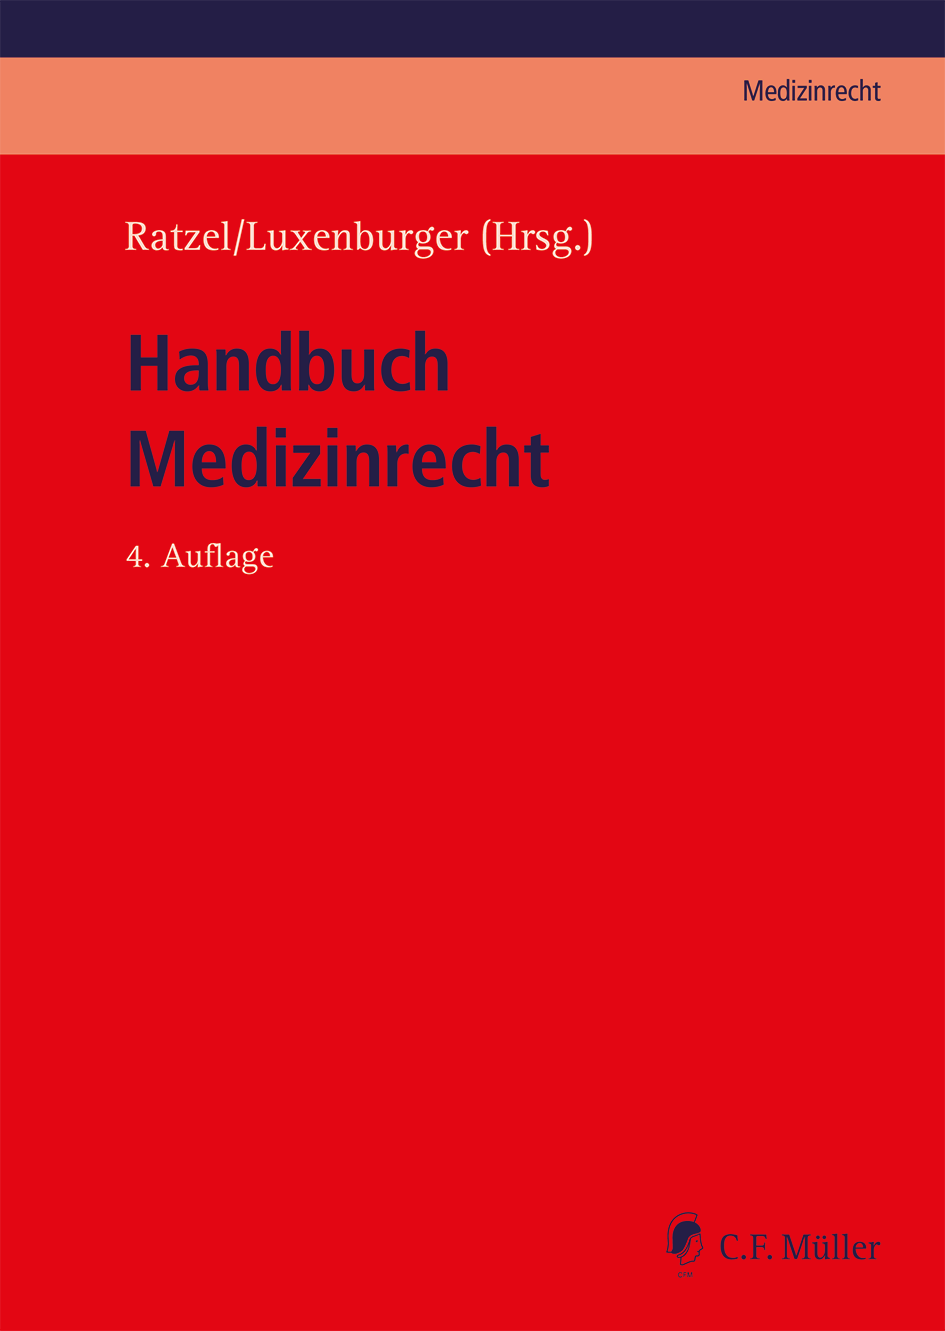 Abbildung: Handbuch Medizinrecht